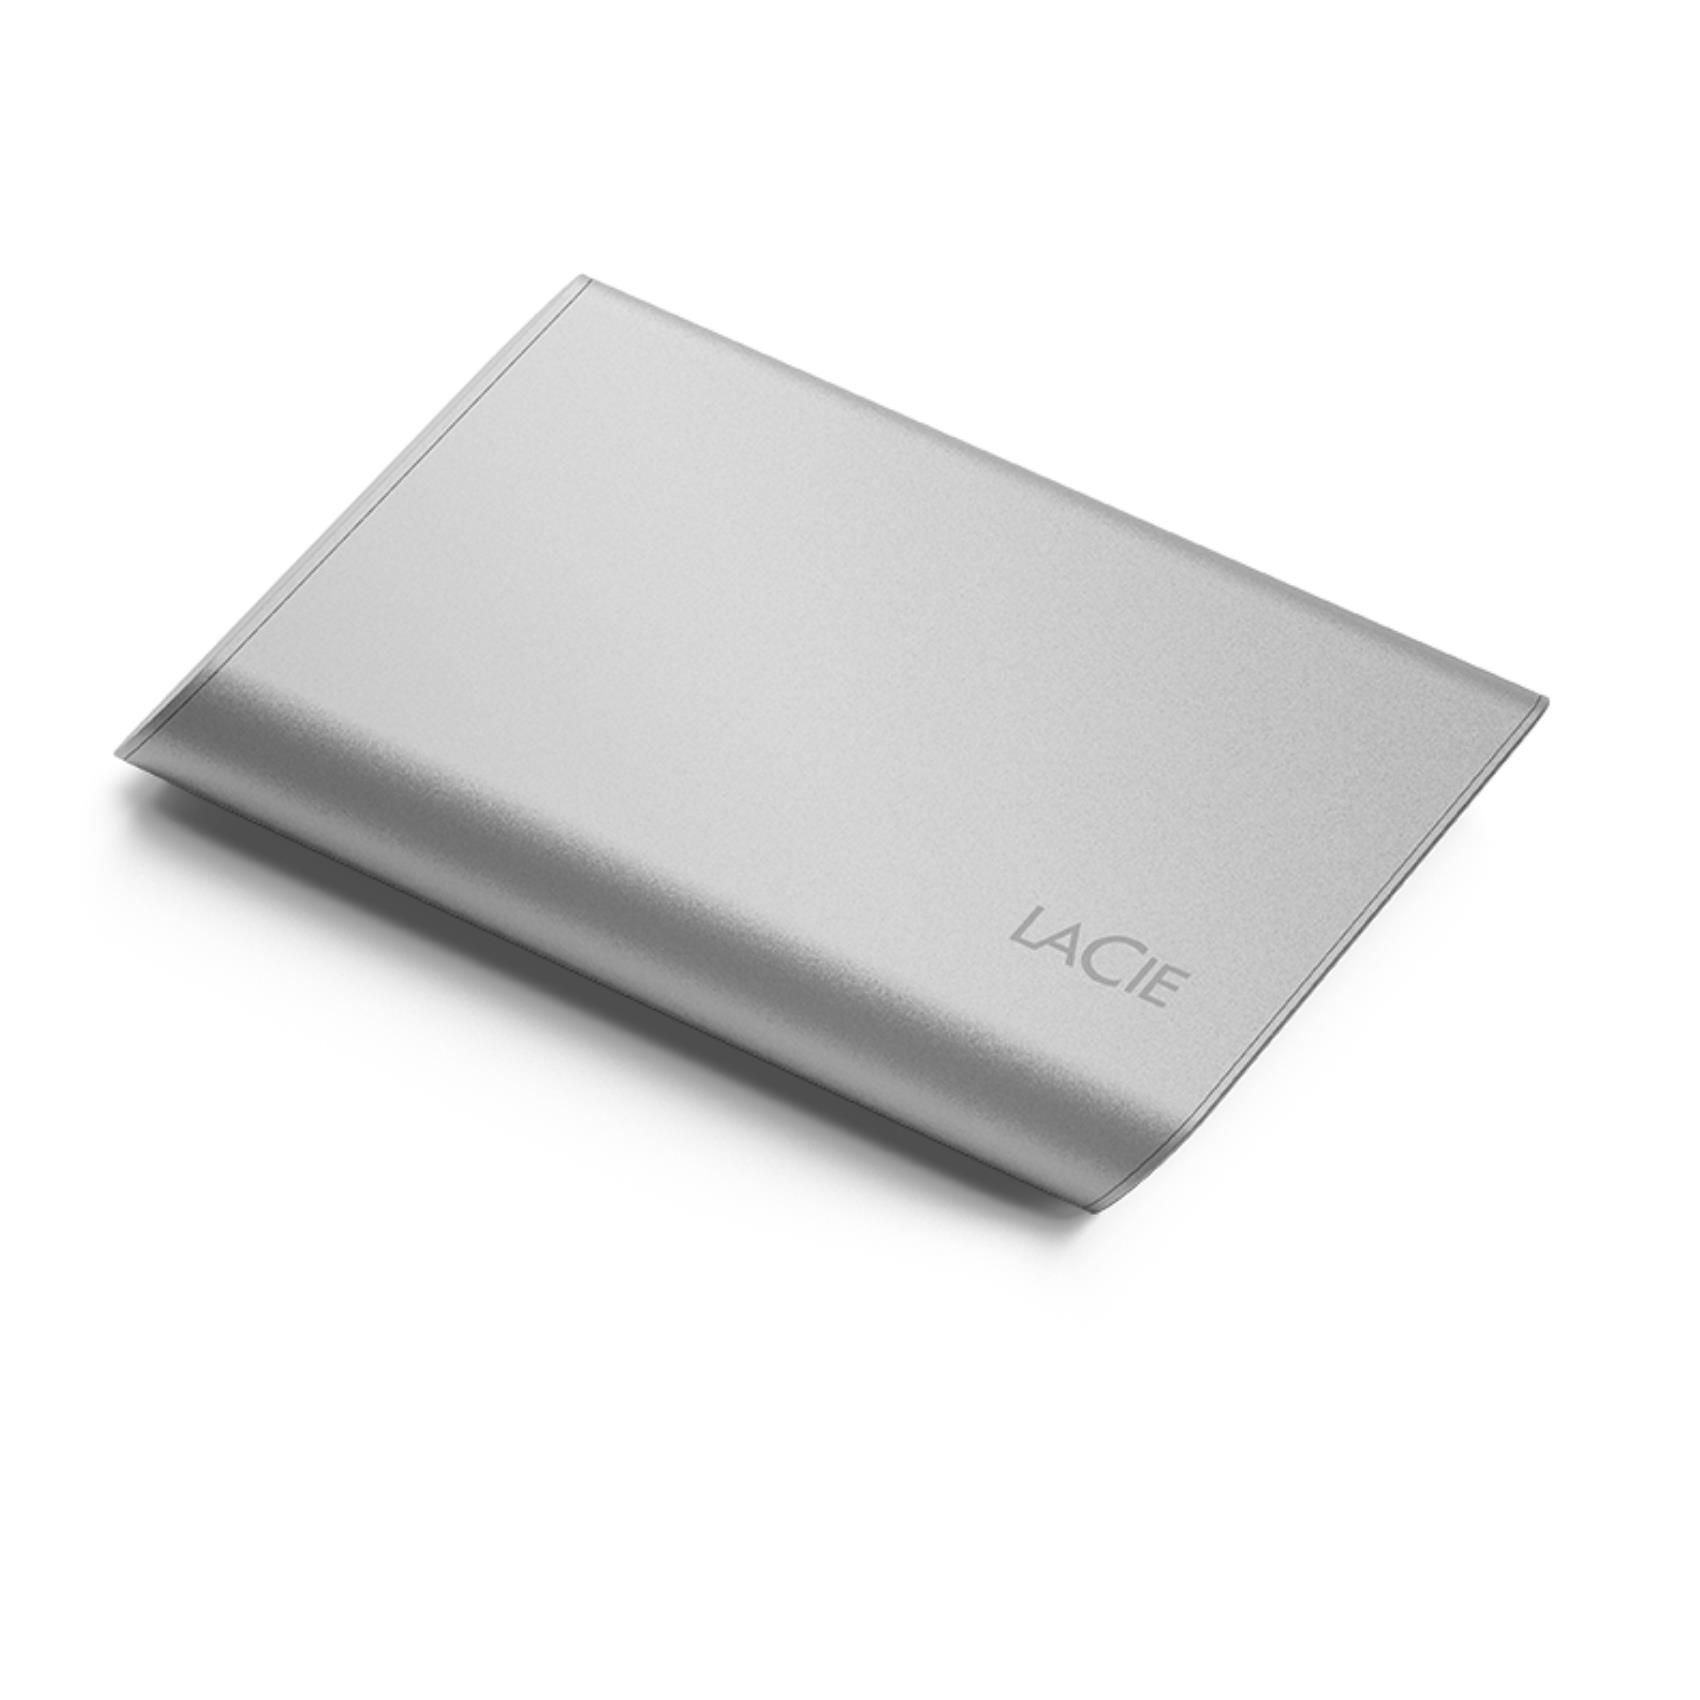 LaCie STKS500400 500Gb Portable